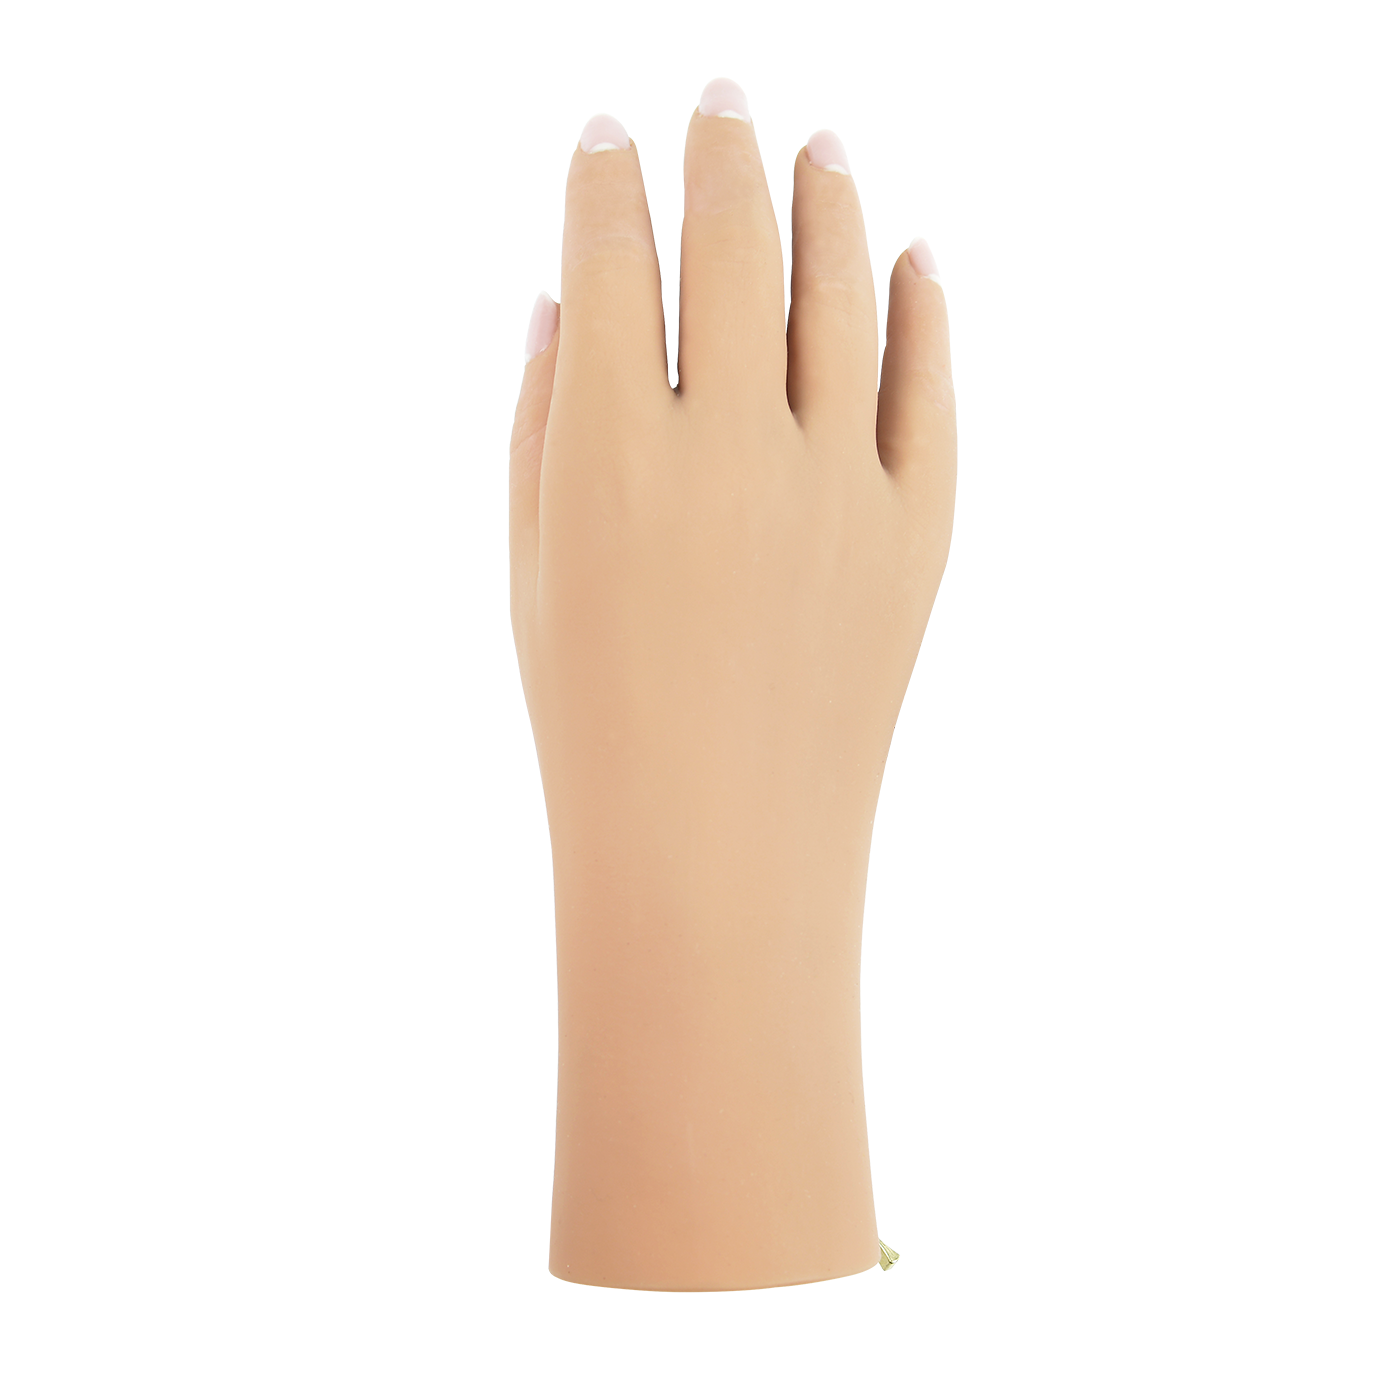 Cosmtic Silicon Glove